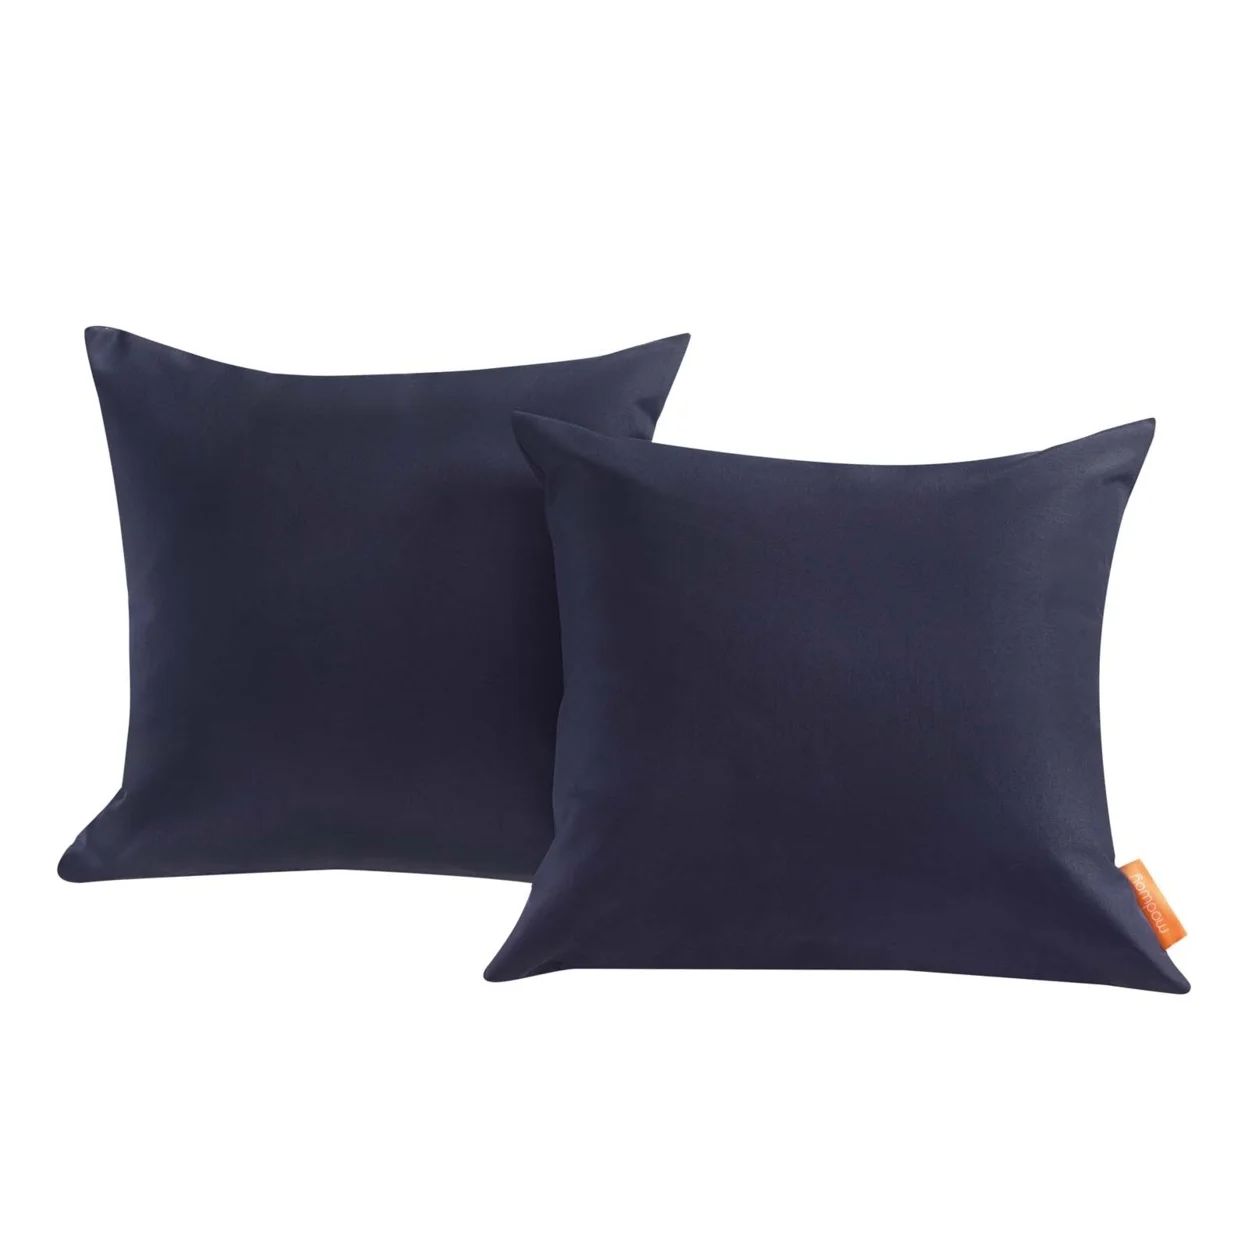 Convene Two Piece Outdoor Patio Pillow SetNavy | Walmart (US)